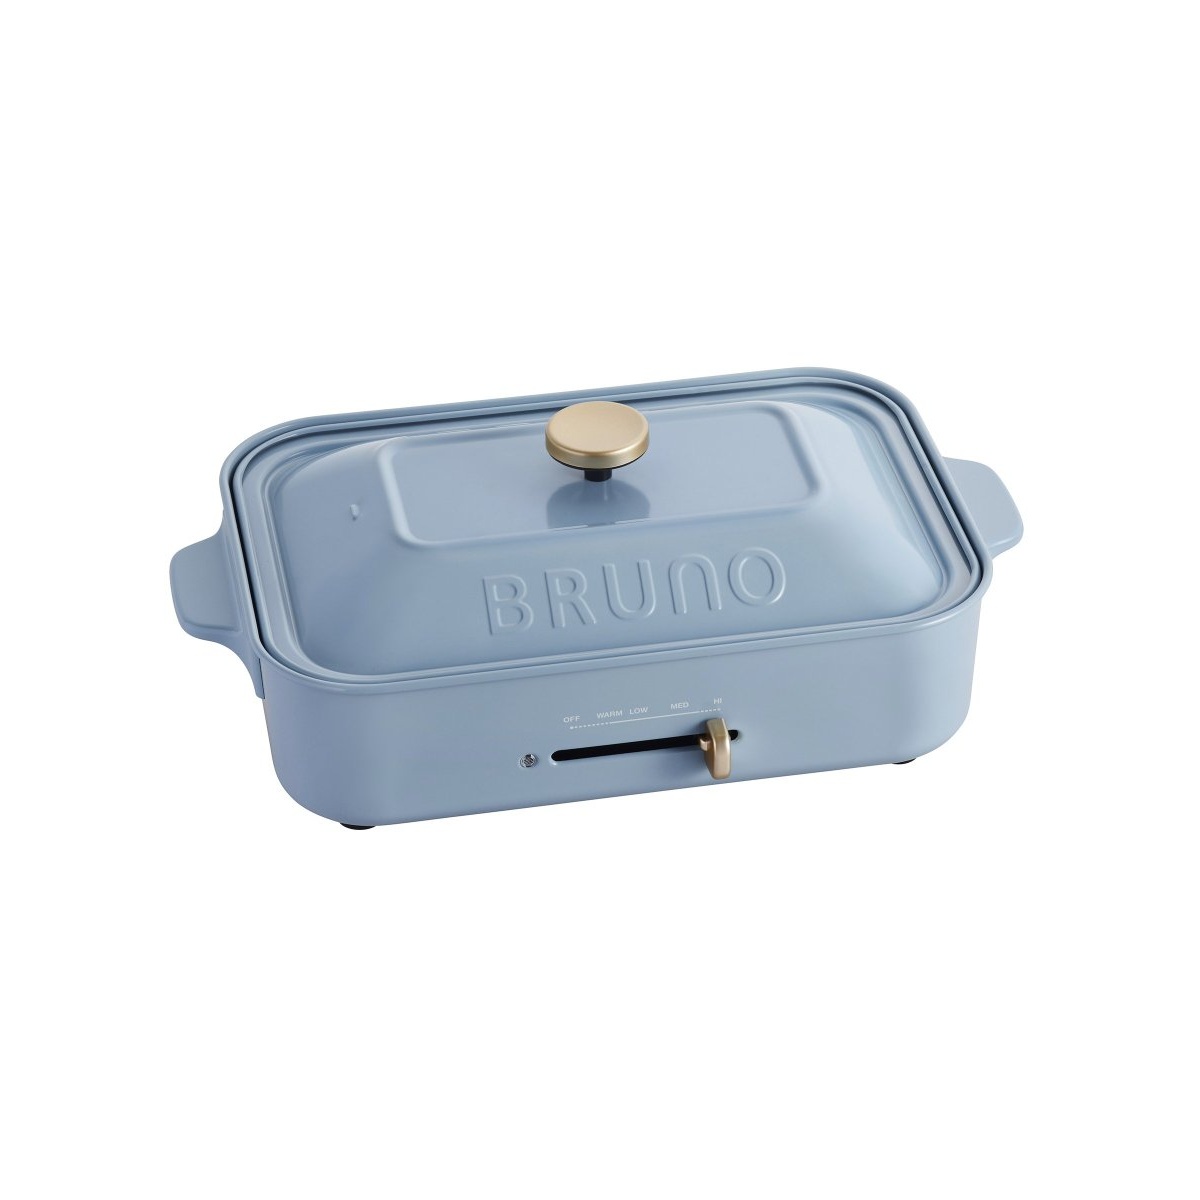 BRUNO ブルーノ コンパクトホットプレート 10TH ブルー | トウキョウ 